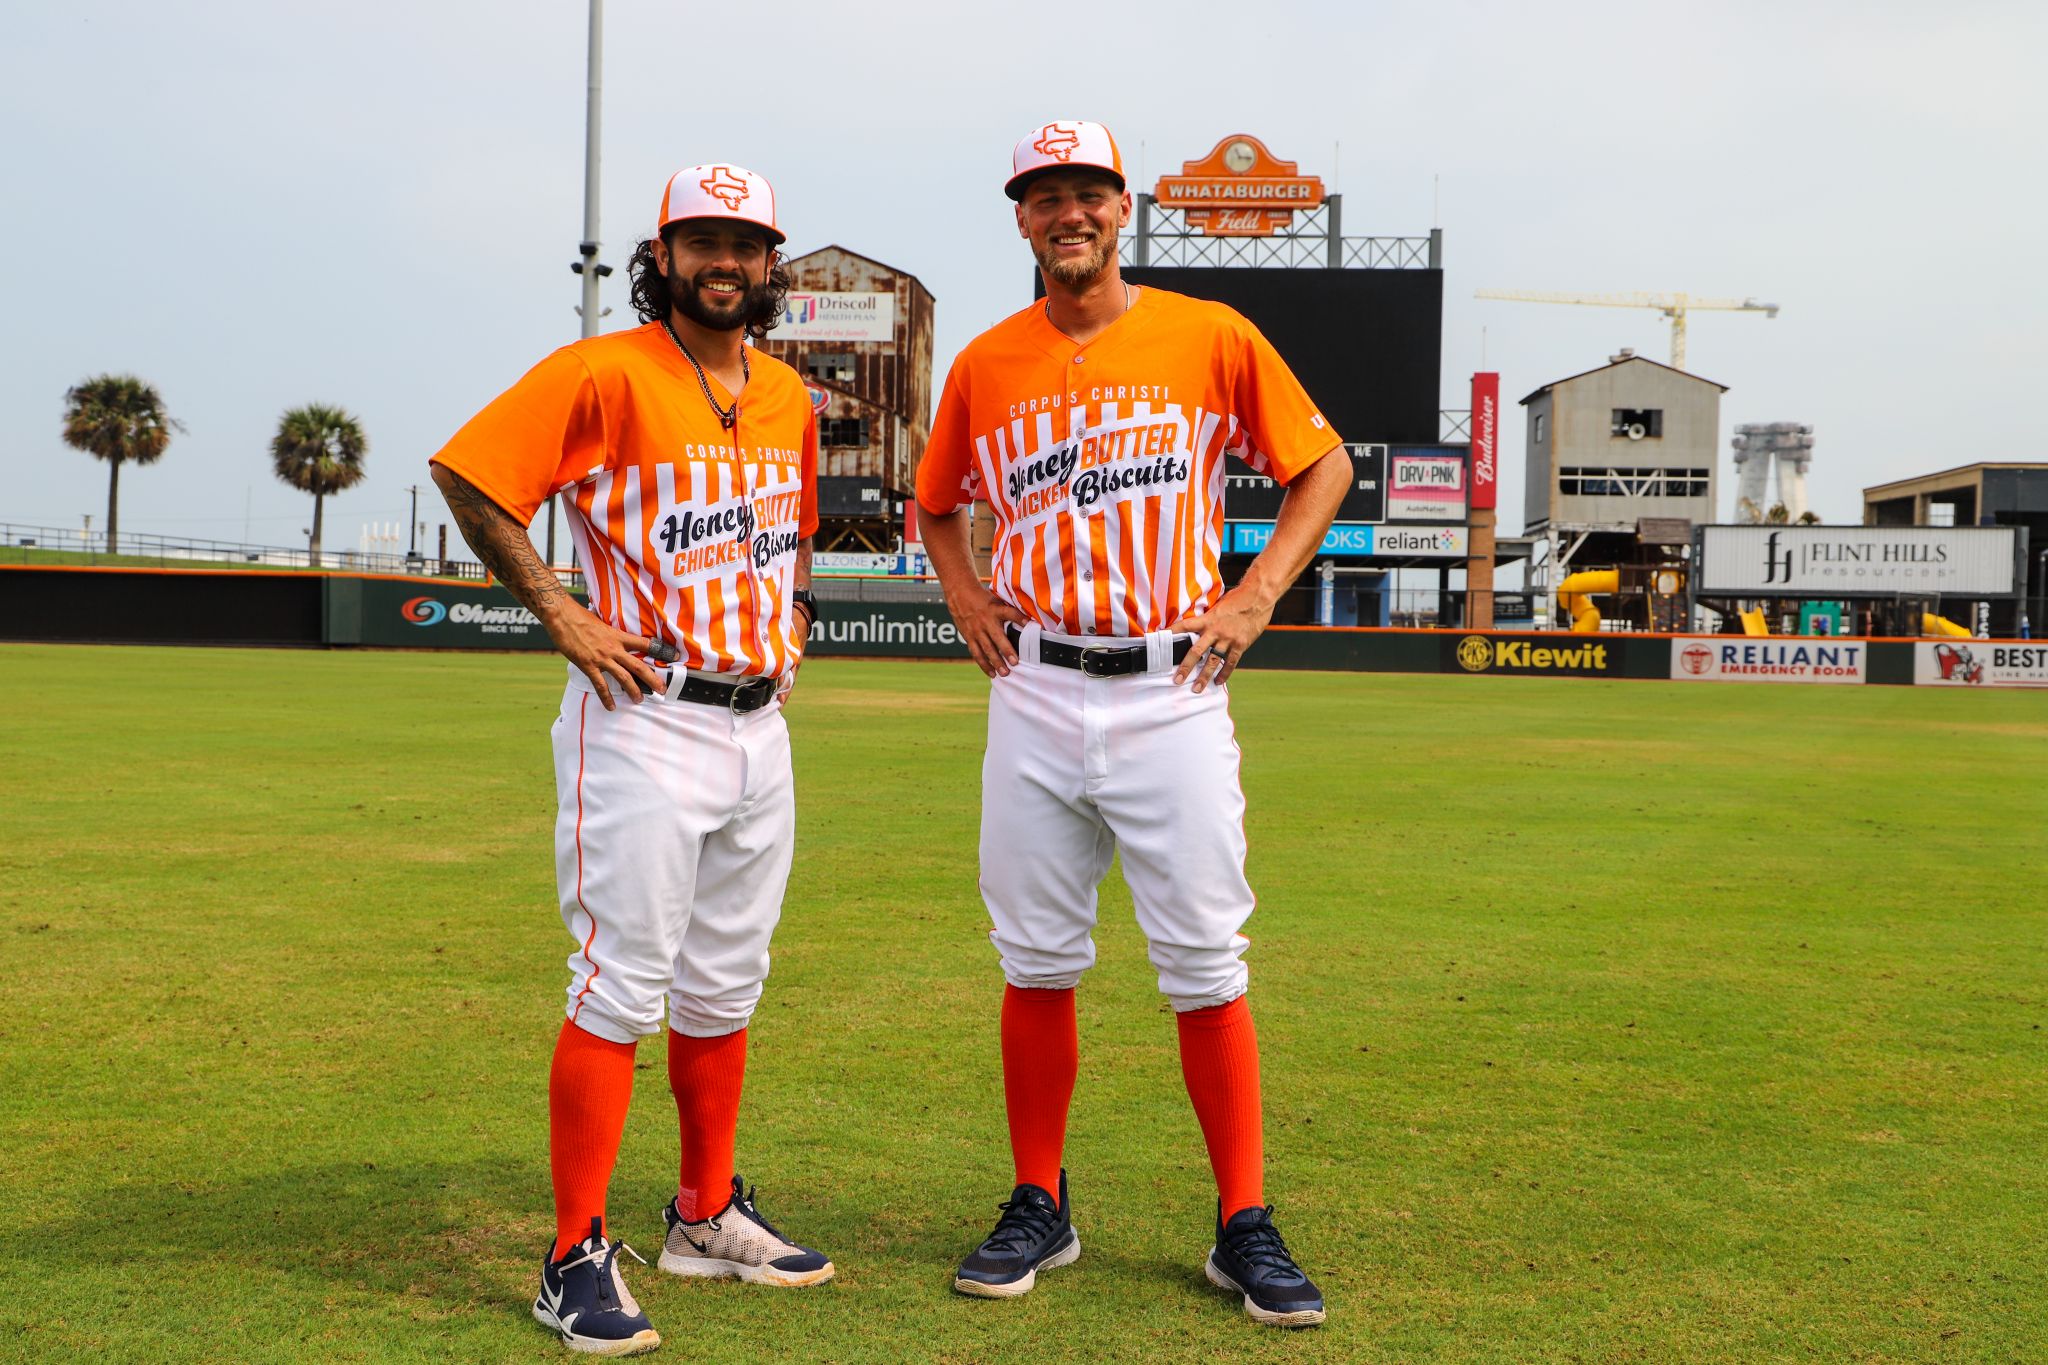 Astros' Class AA team to wear Whataburger Honey Butter Chicken